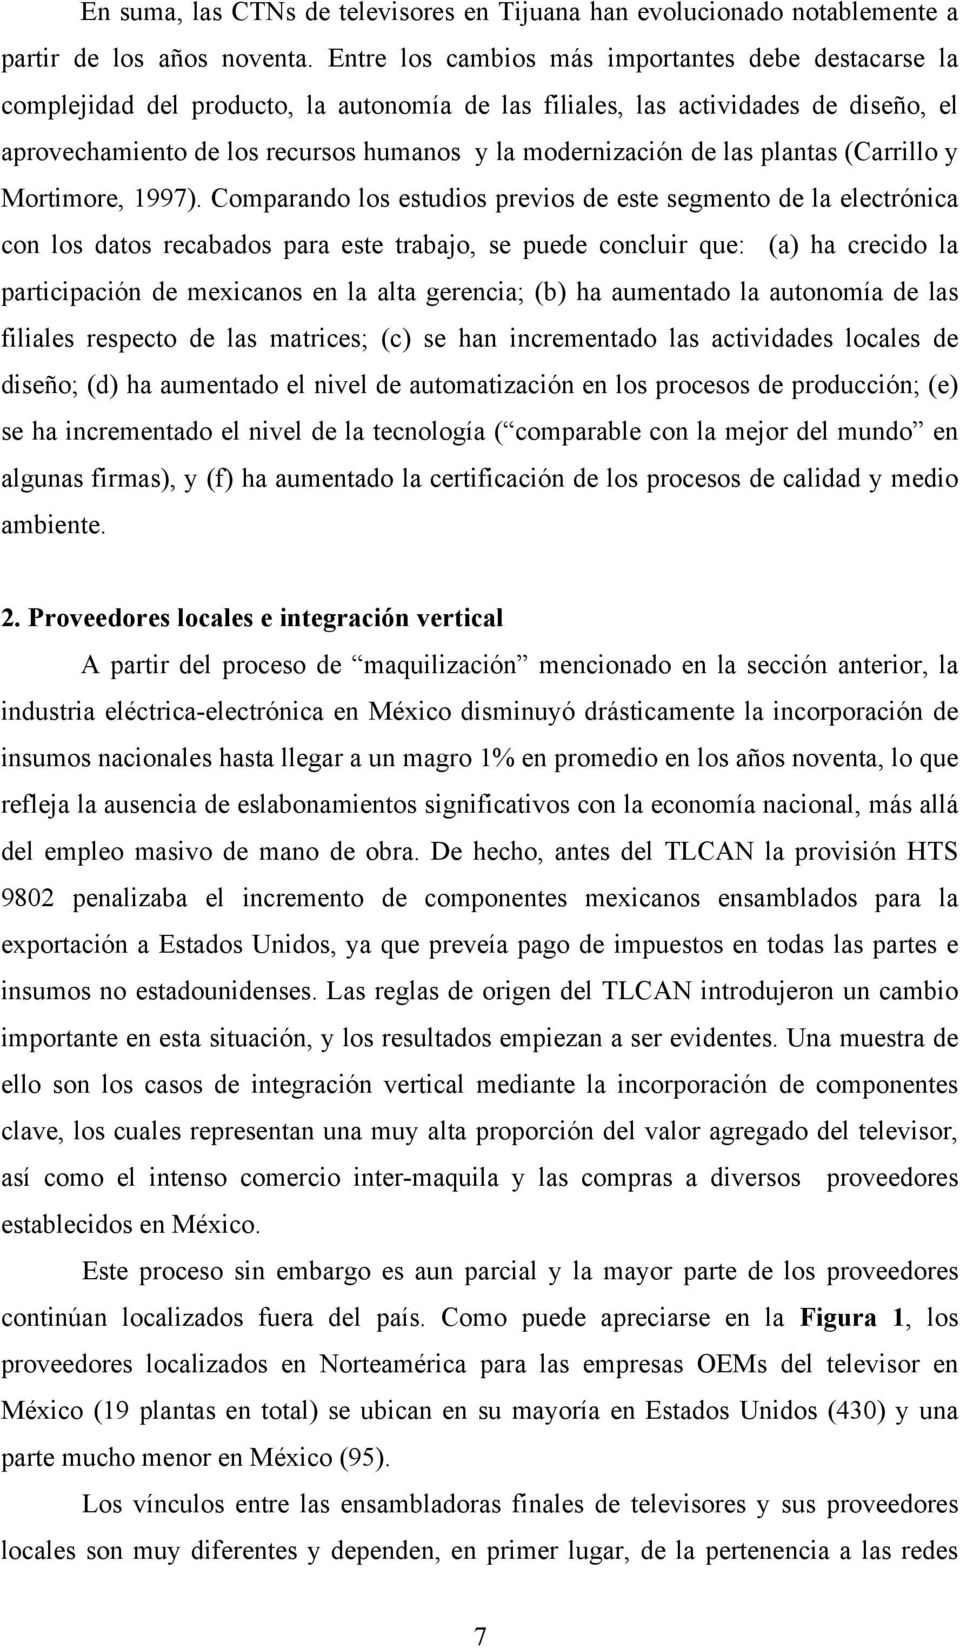 de las plantas (Carrillo y Mortimore, 1997).